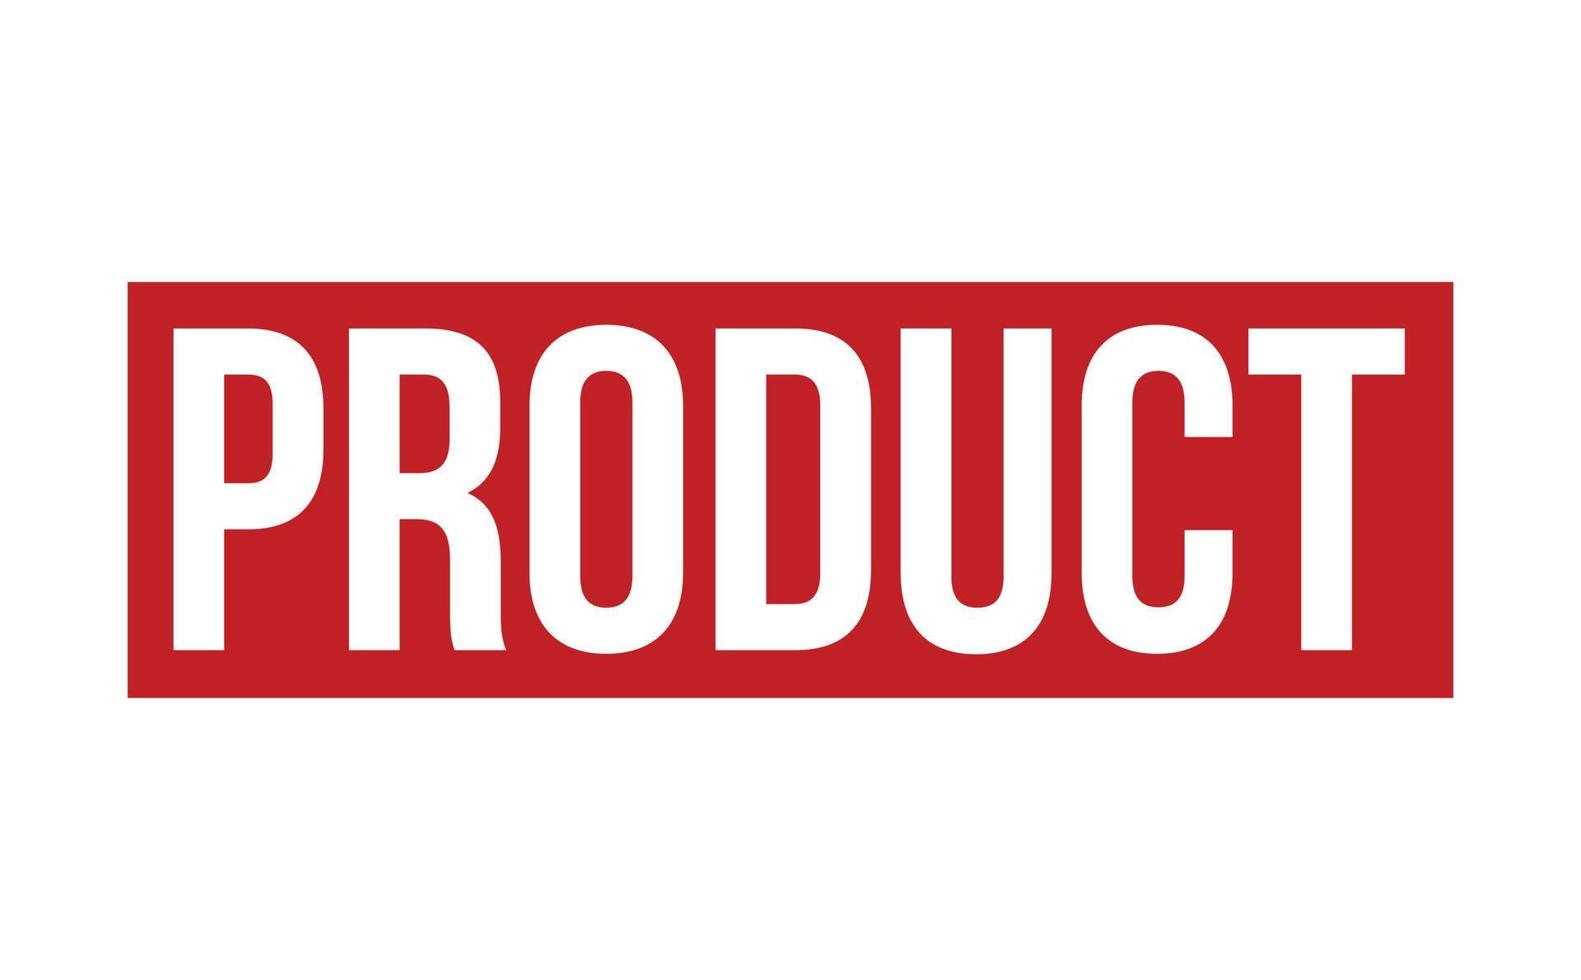 Product rubber stempel. rood Product rubber grunge postzegel zegel vector illustratie - vector